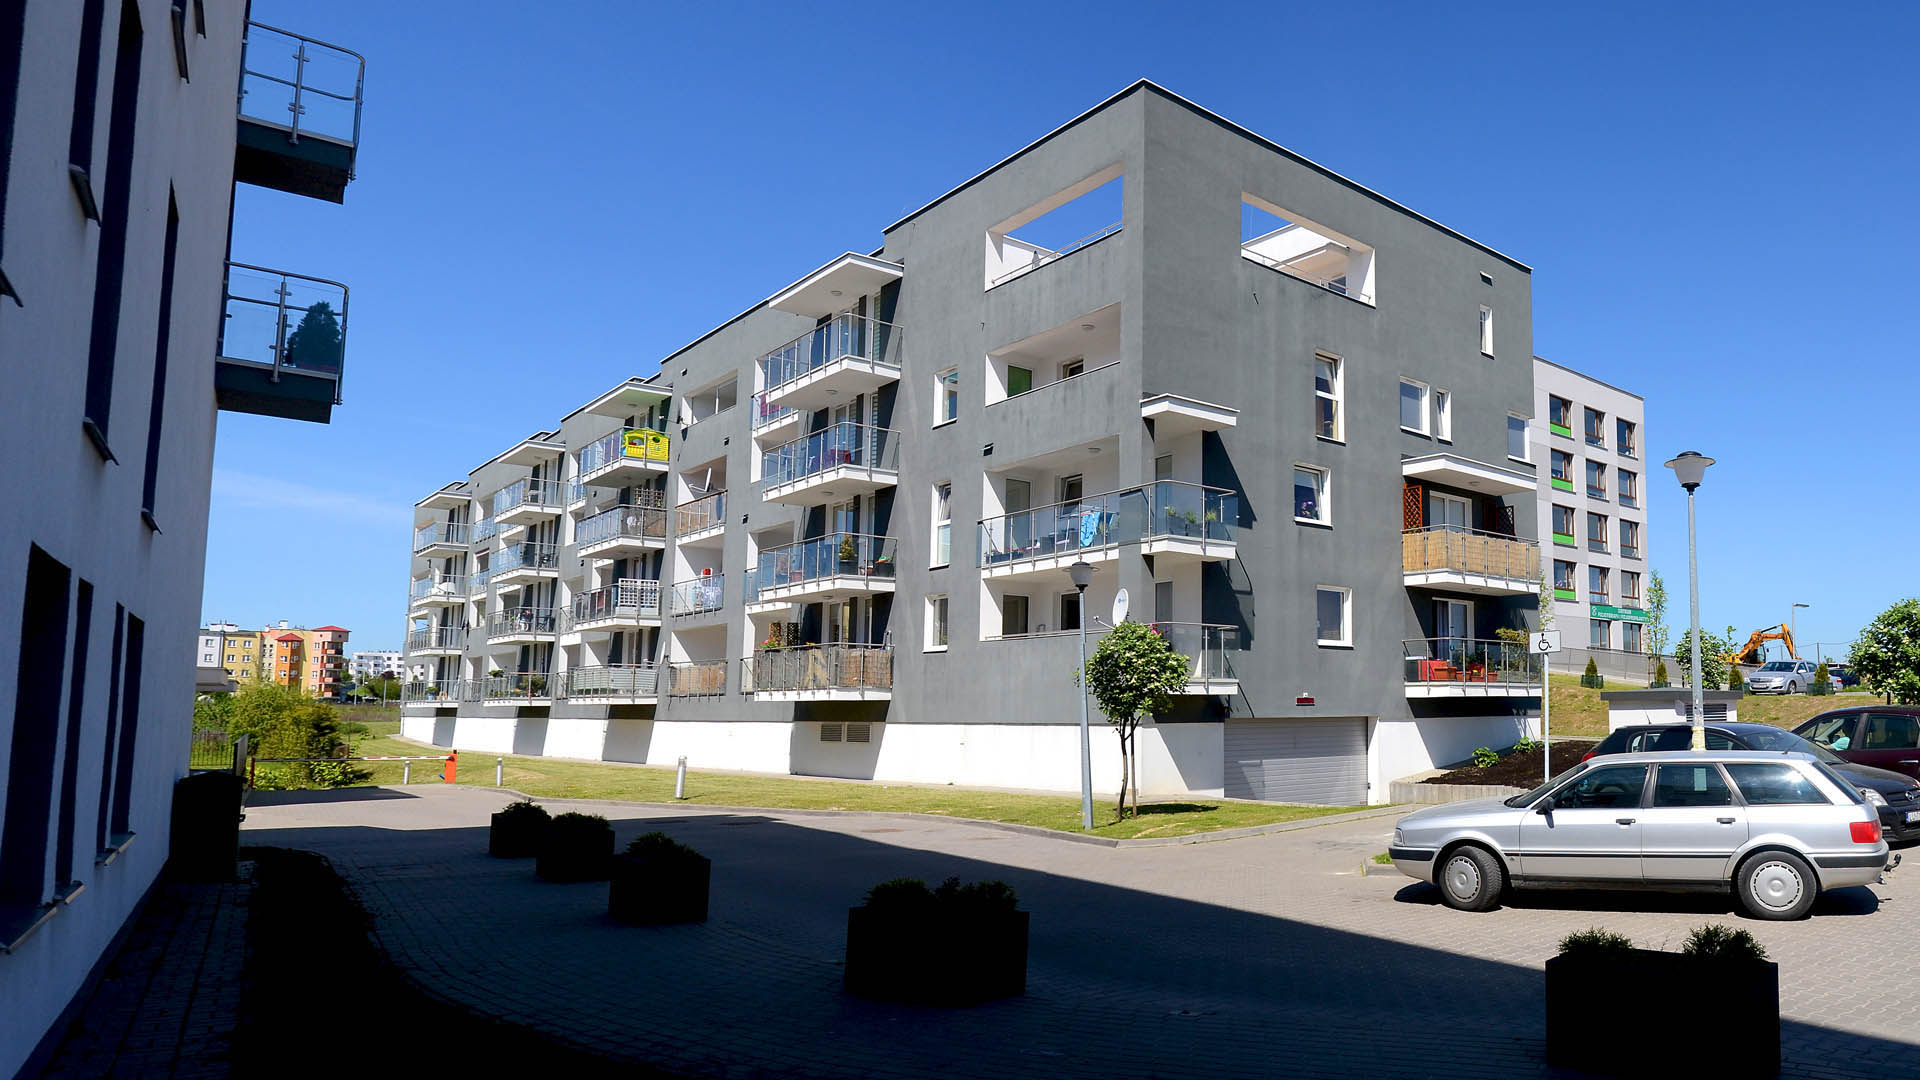 Nowe osiedle inwestycyjne. Nowoczesne, szare bloki. Nowe mieszkania na sprzedaż w Lublinie.